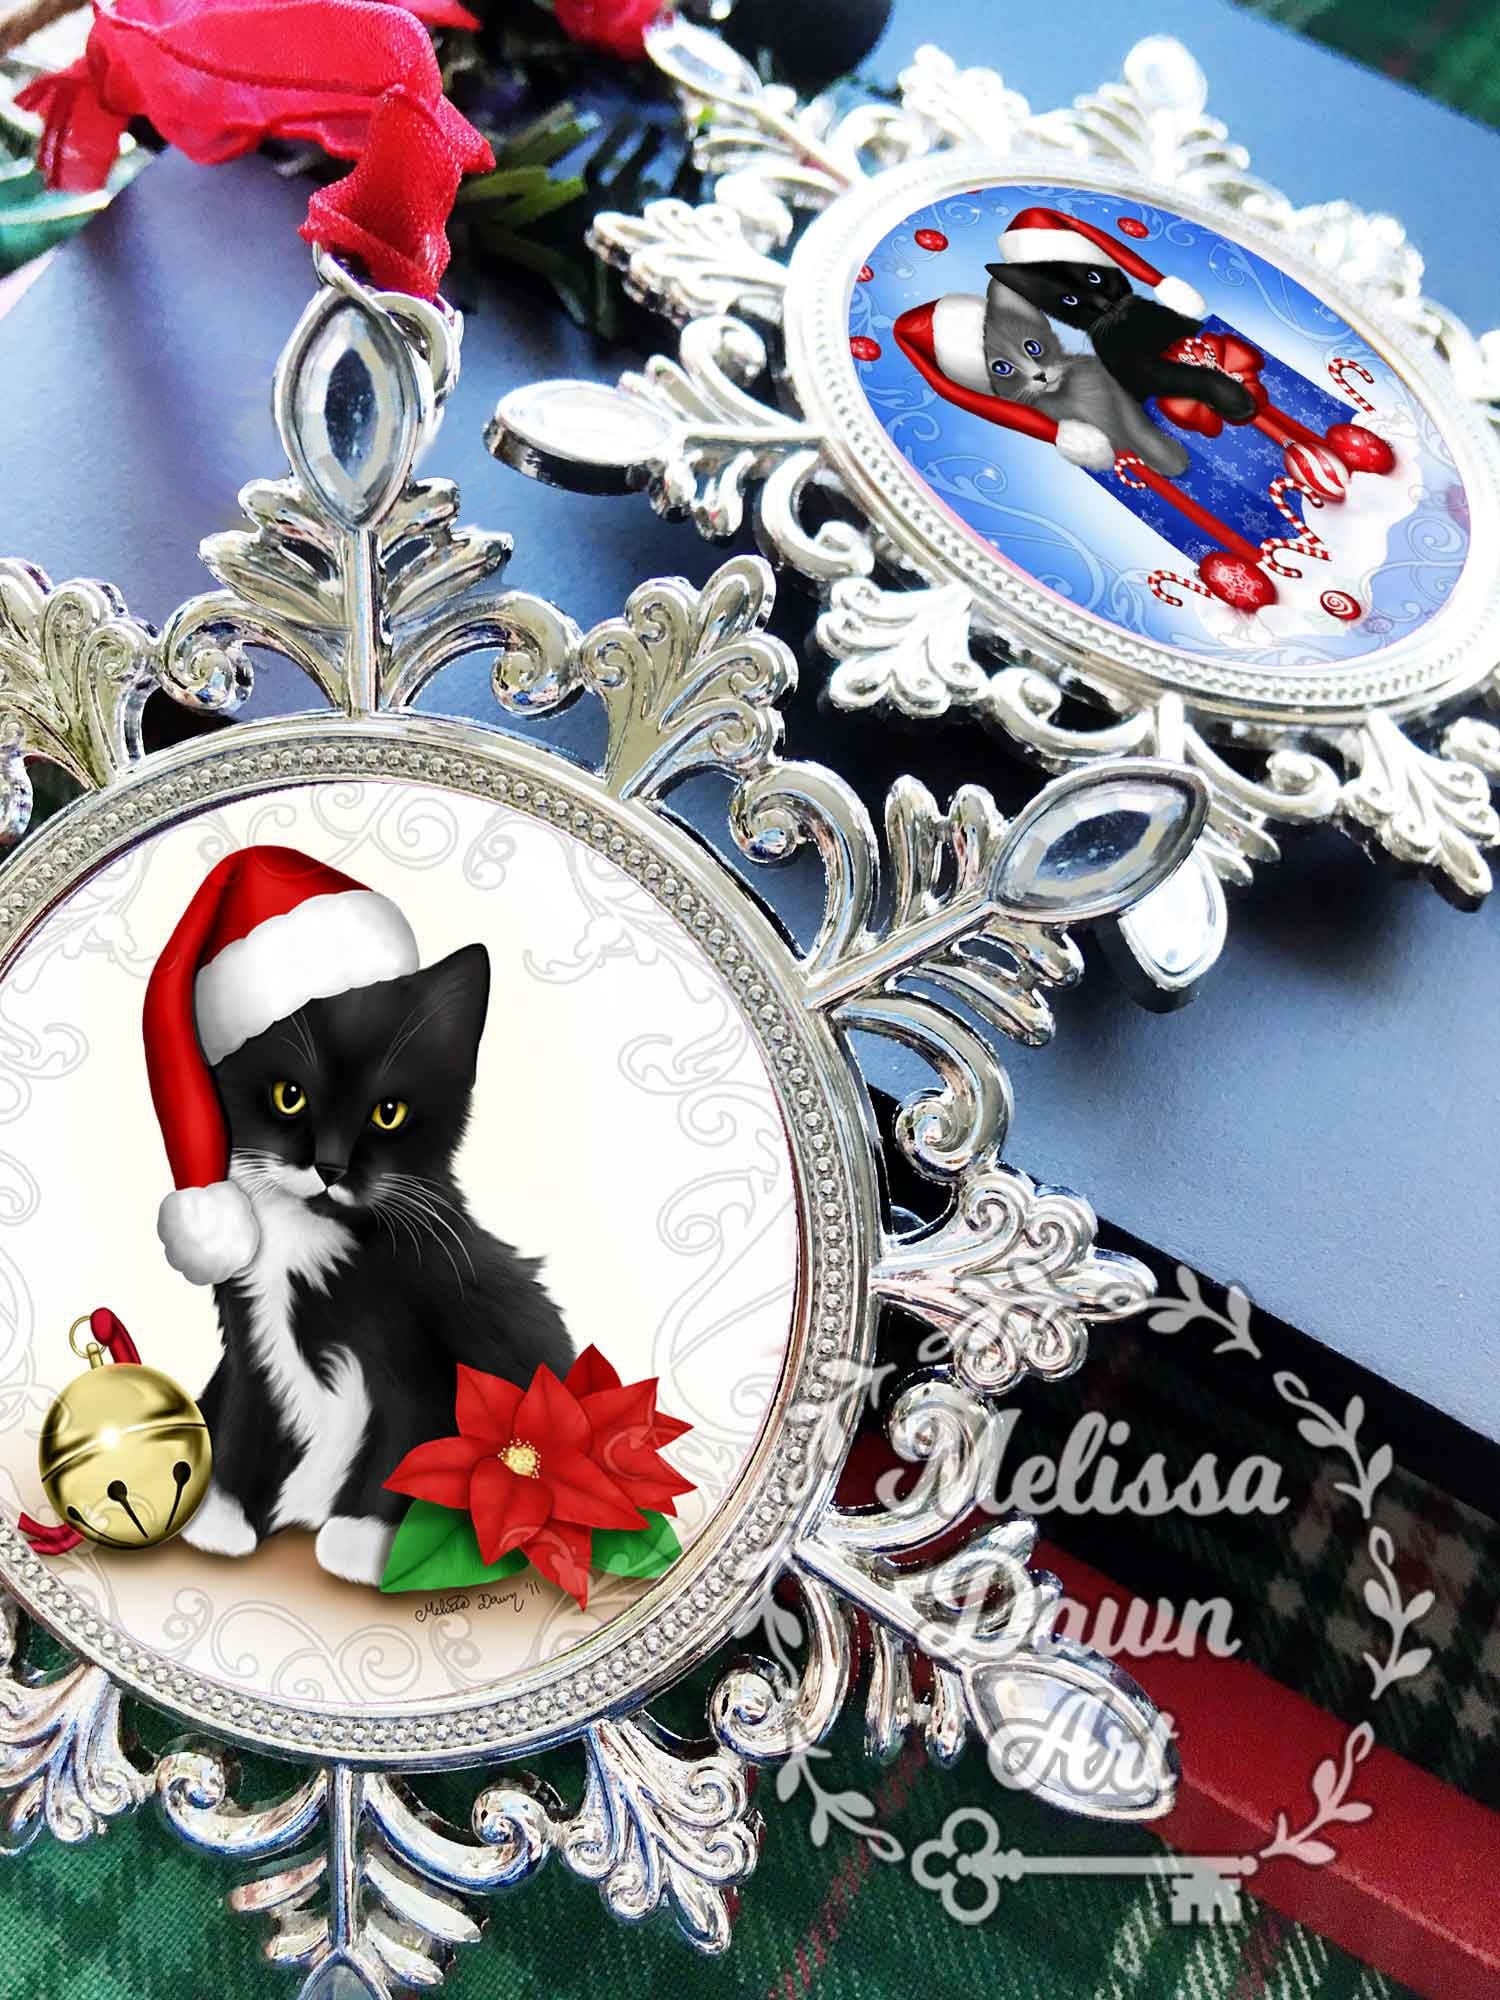 Custom Cat Ornament / Black Cat Ornament / Black Cat Art / Cat Christmas Ornament / Ornament / Autumn Cat Ornament / Cat Memorial Ornament